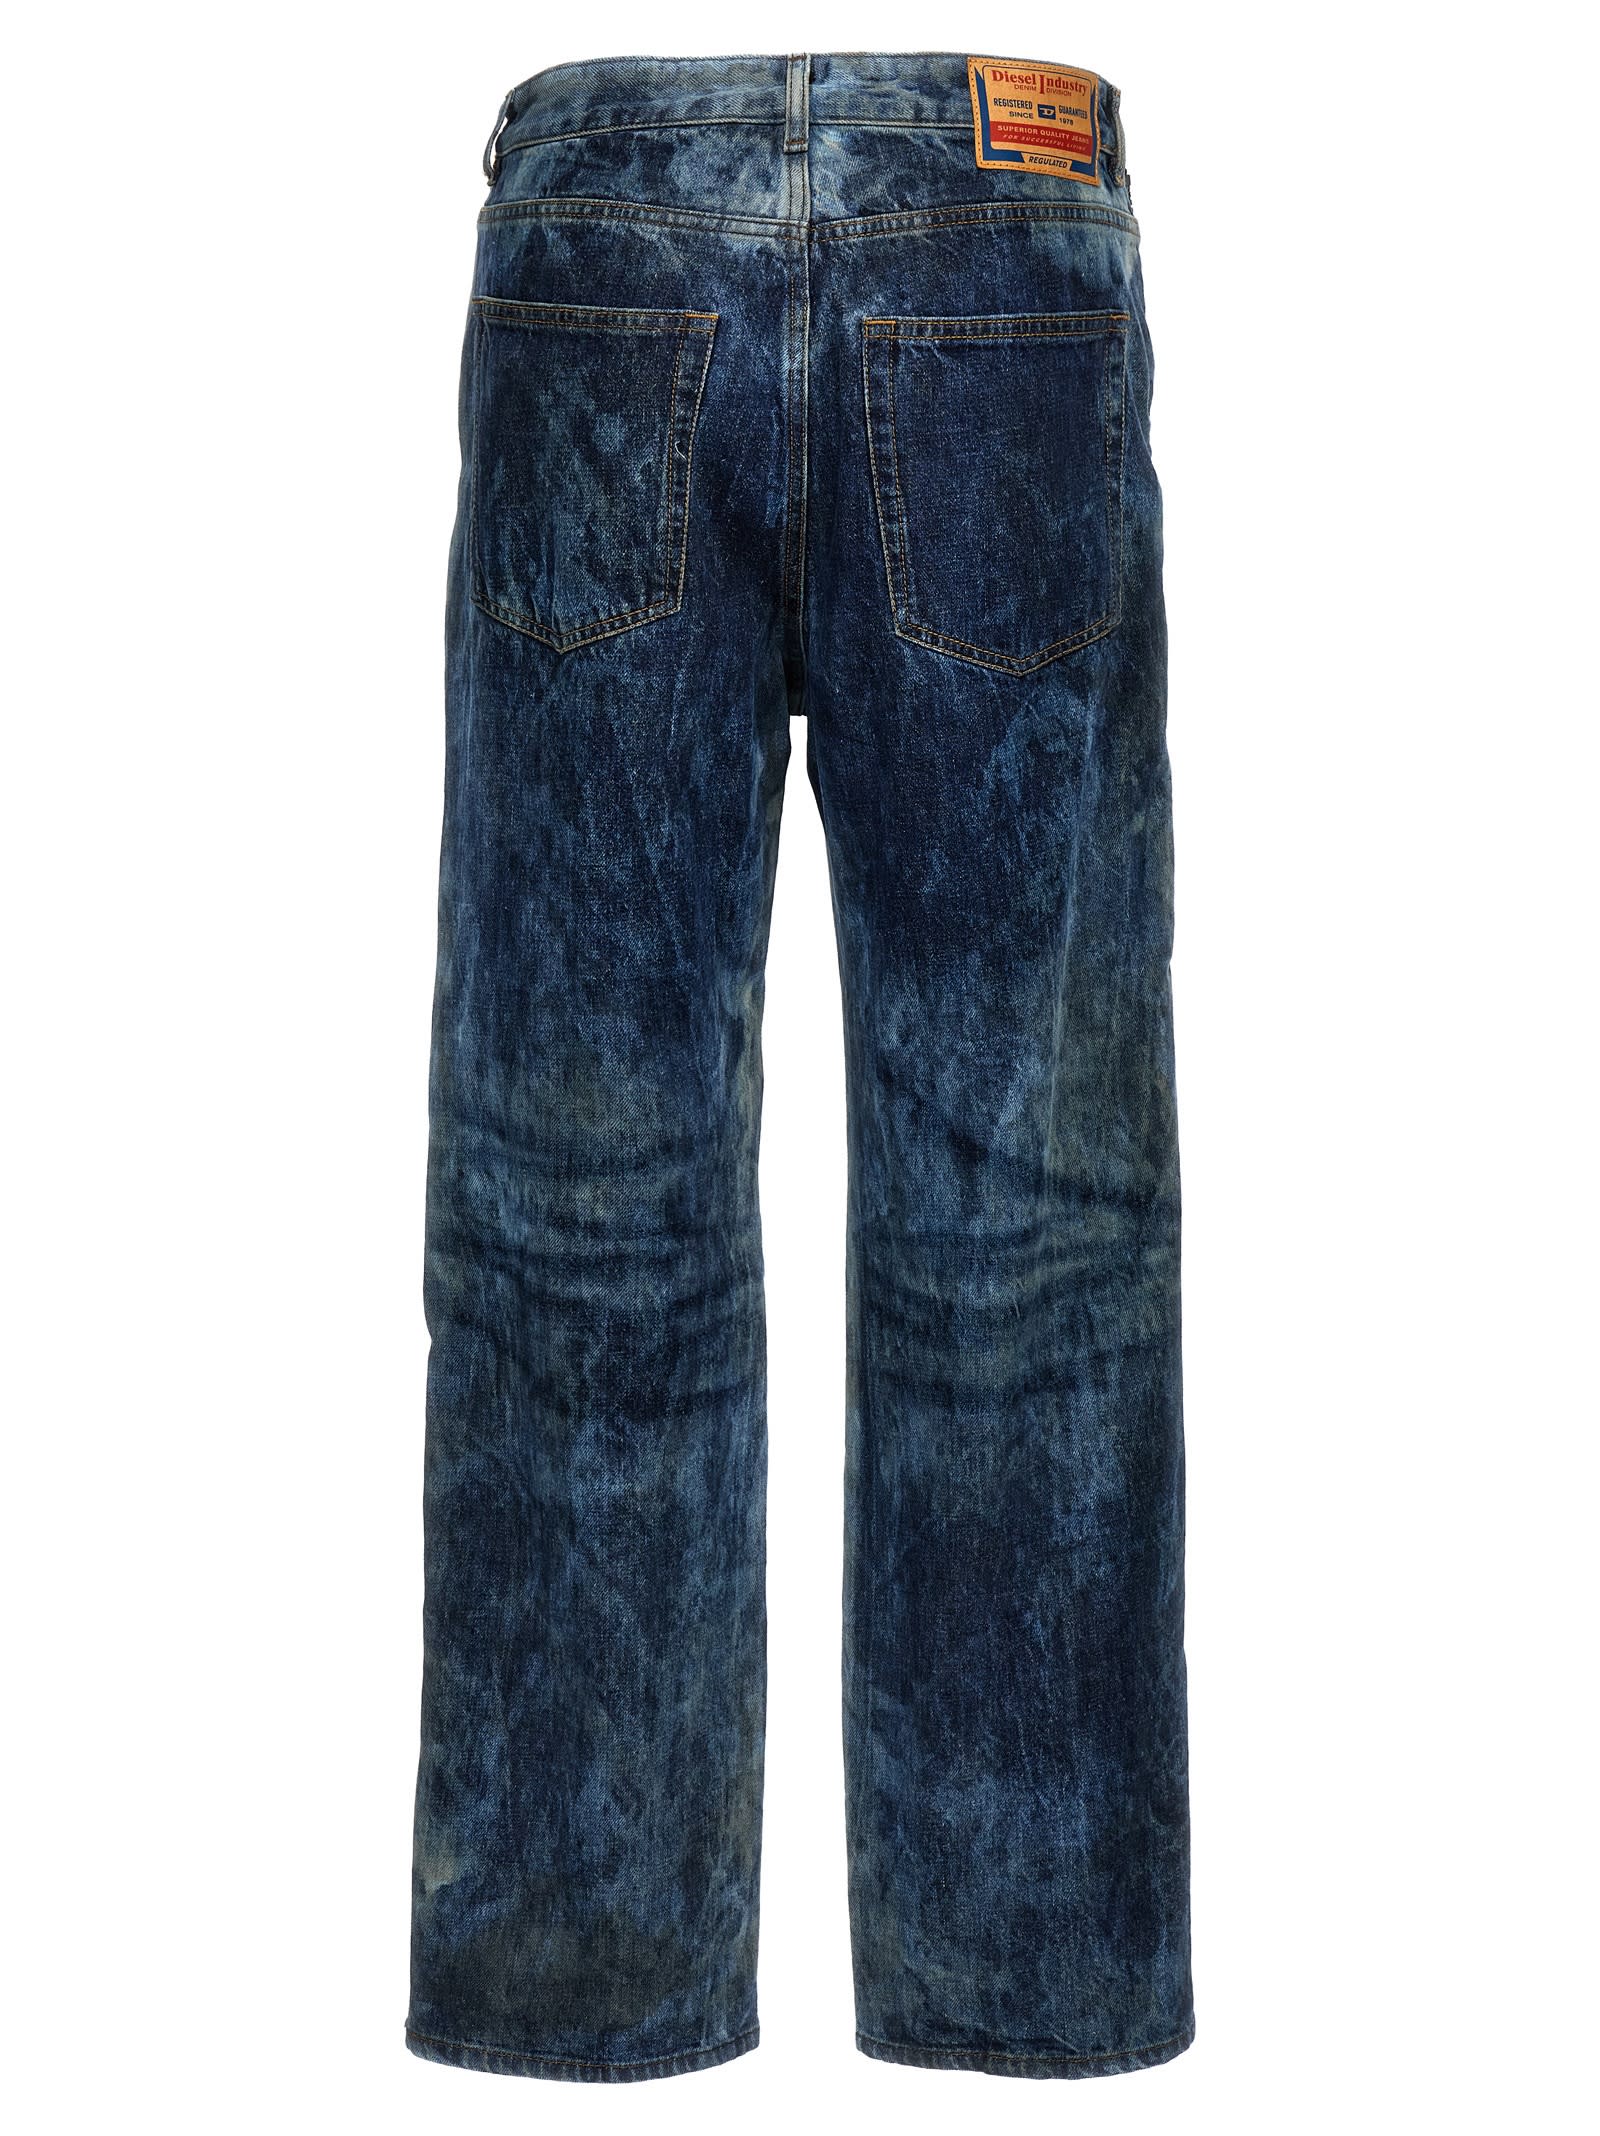 Shop Diesel D-rise 0pgax Jeans